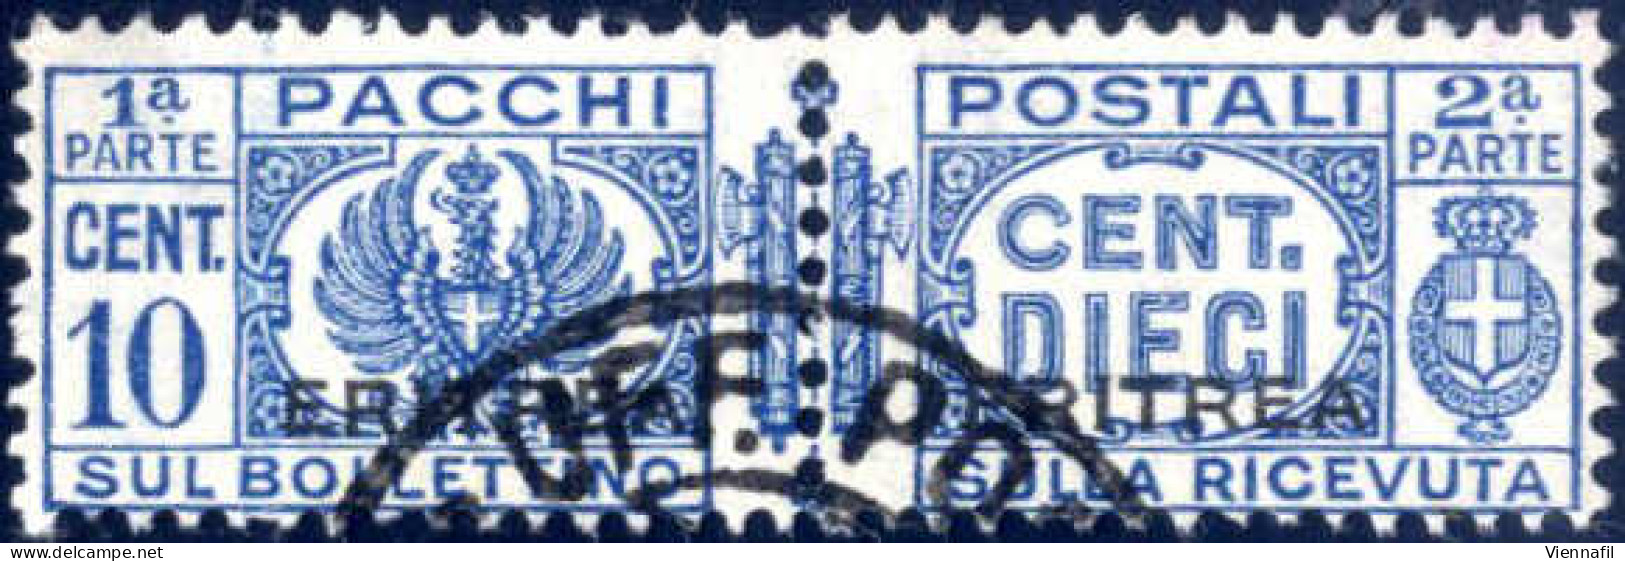 O 1927-37, Pacchi Postali 10 C. Azzurro (fascio Littorale) Con Soprastampa "ERITREA" Usato, Leggero Annullo Parziale, Fi - Erythrée